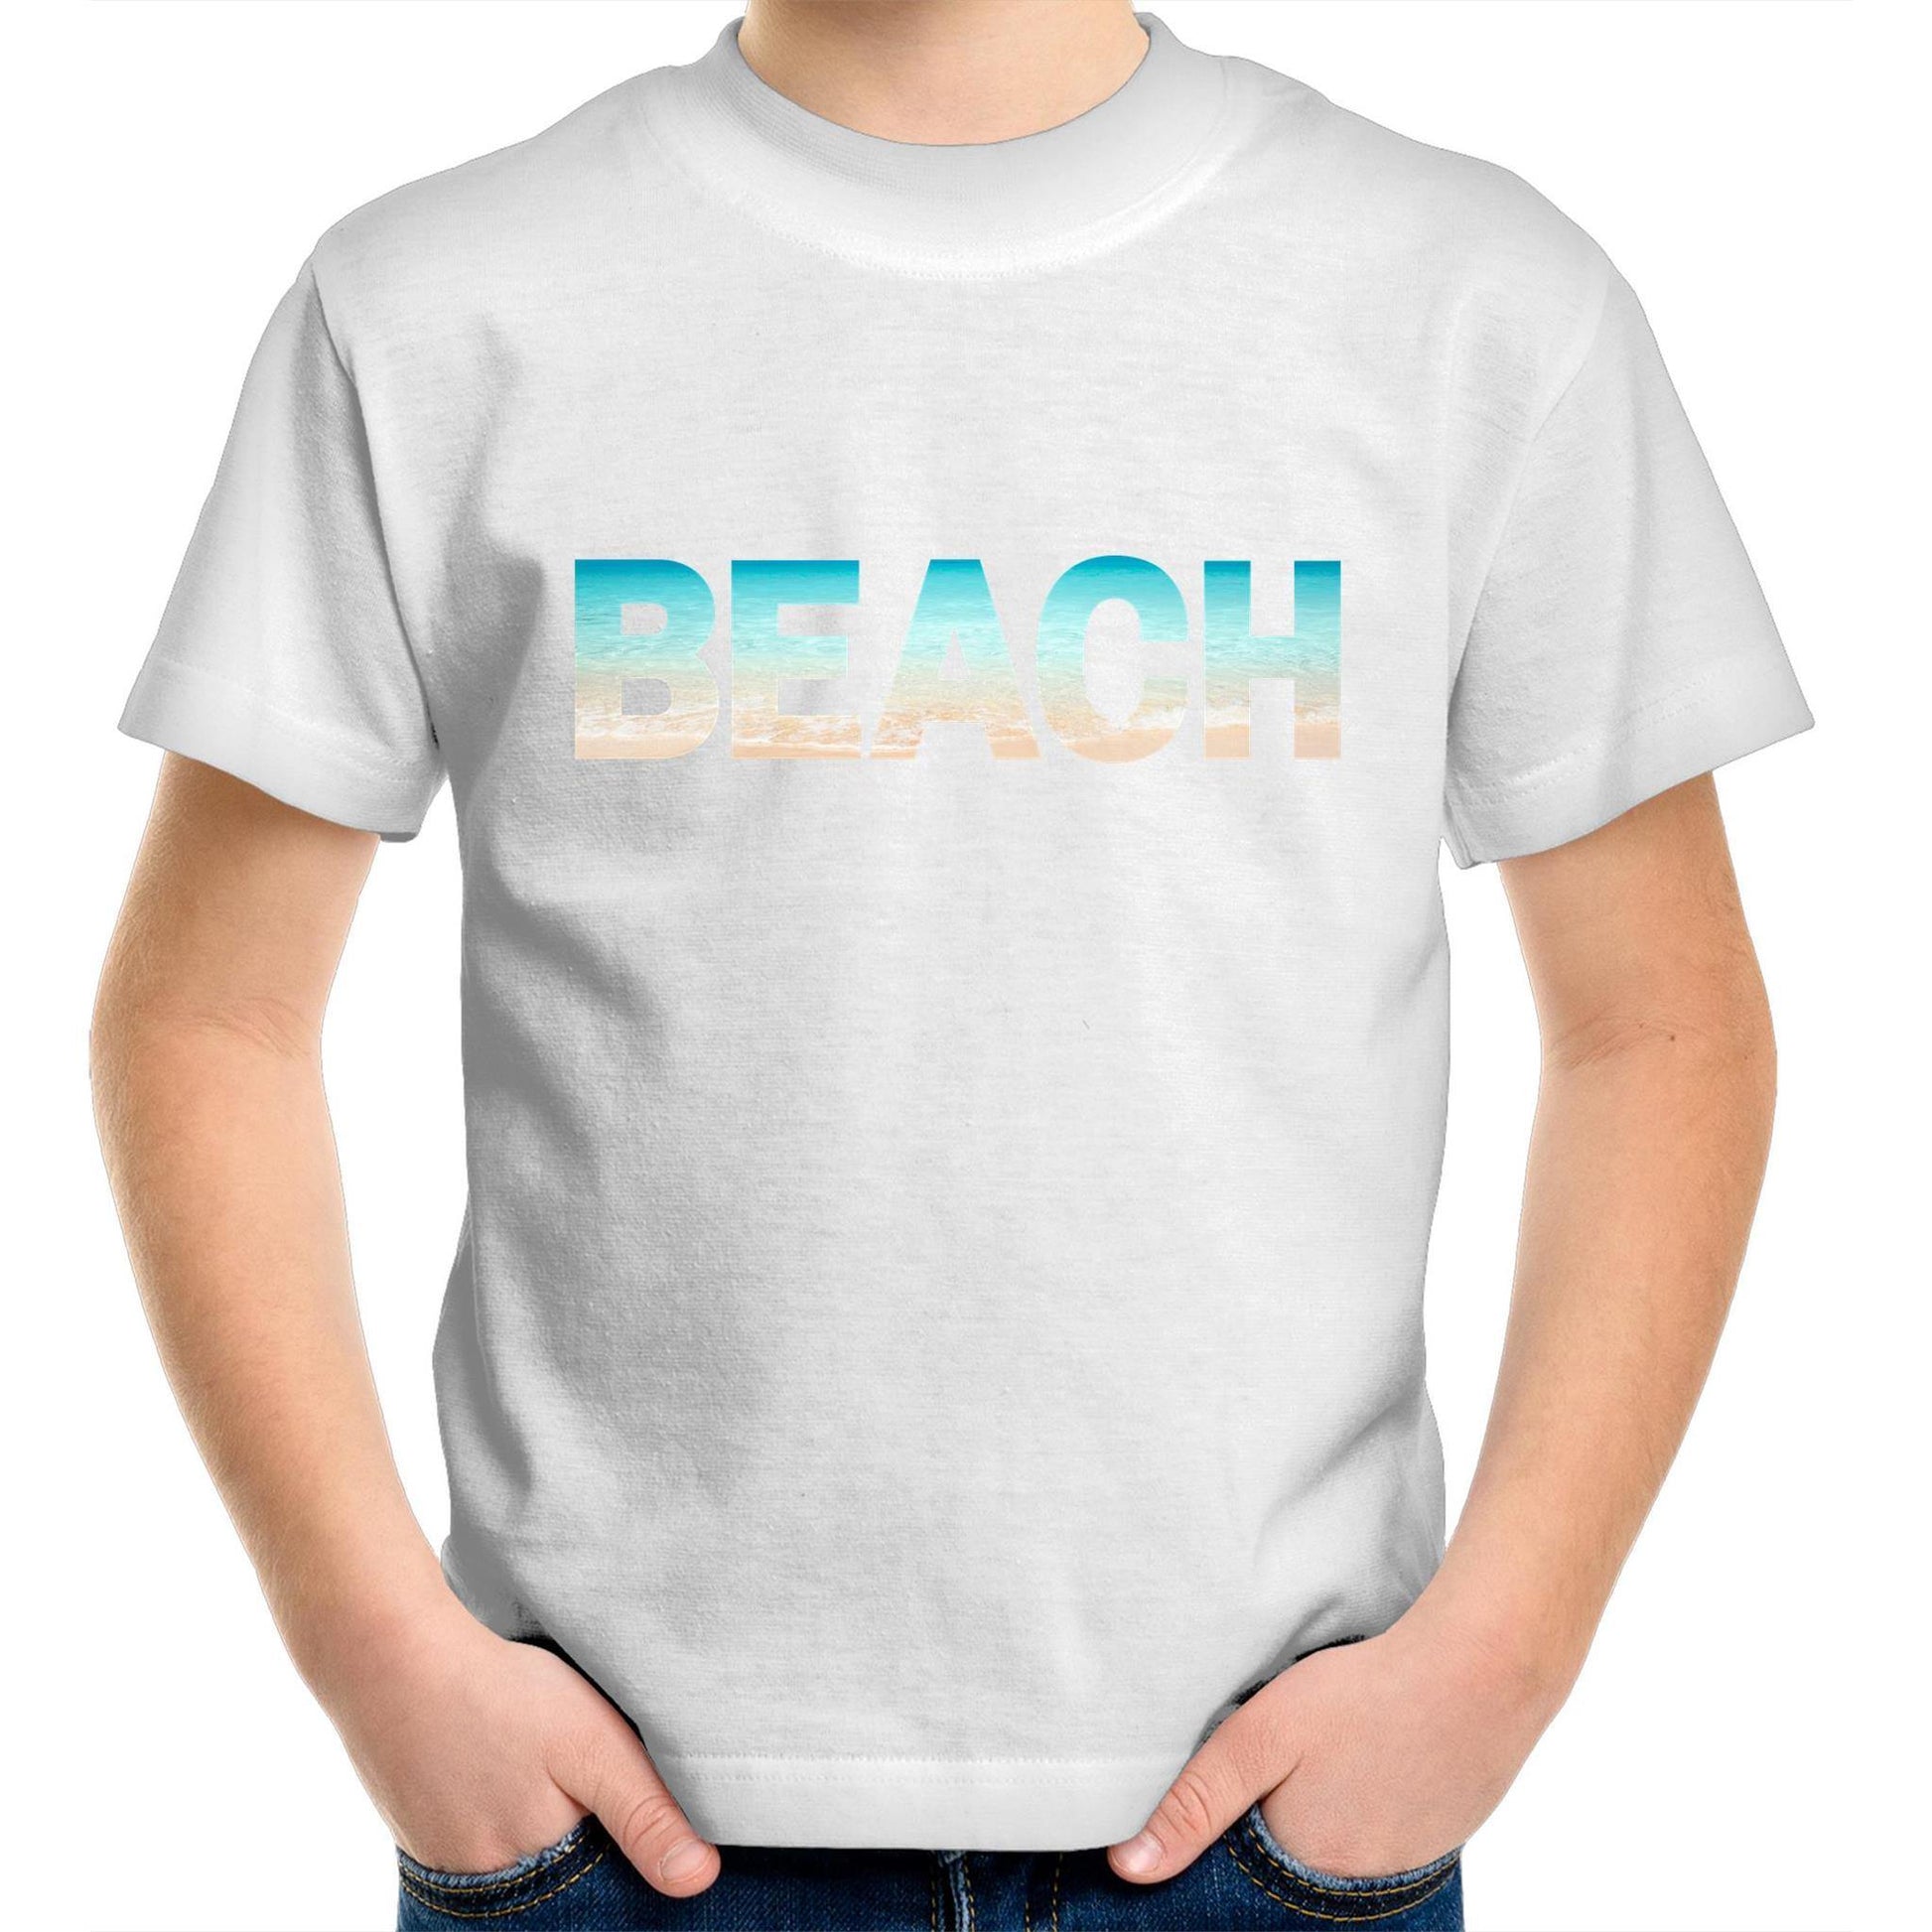 Beach - Kids Youth Crew T-Shirt White Kids Youth T-shirt Summer